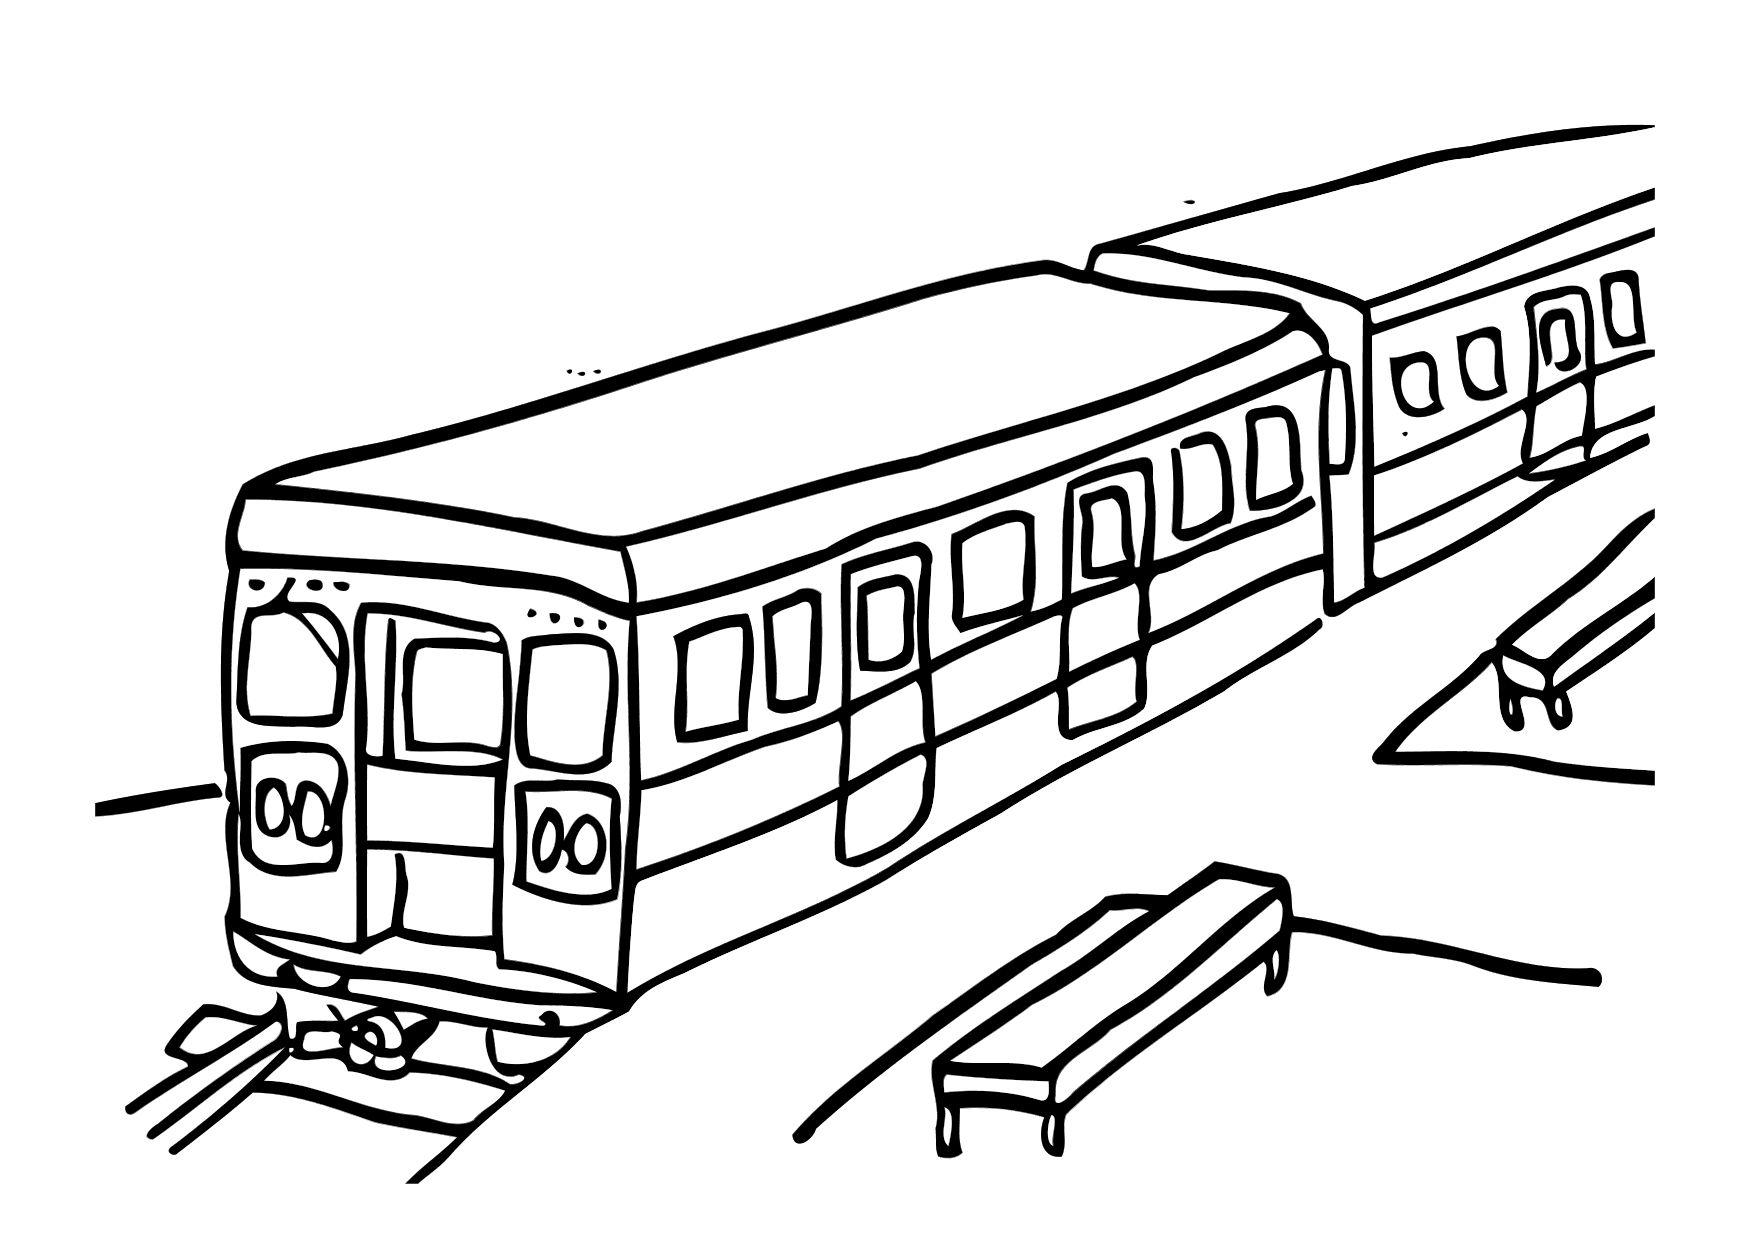 Disegno da colorare treno